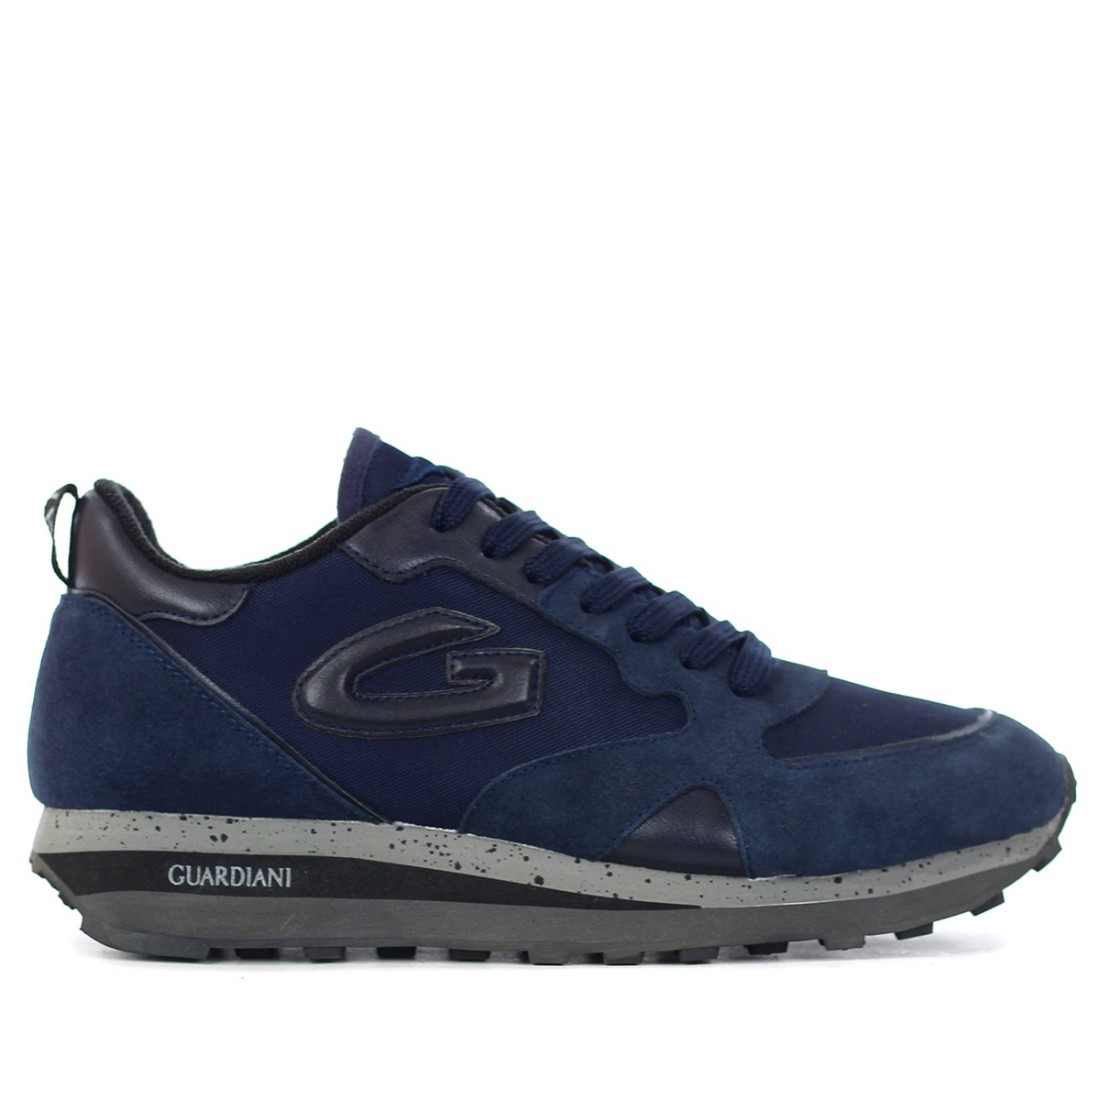 Image of GUARDIANI - Sneakers con logo - Colore: Blu,Taglia